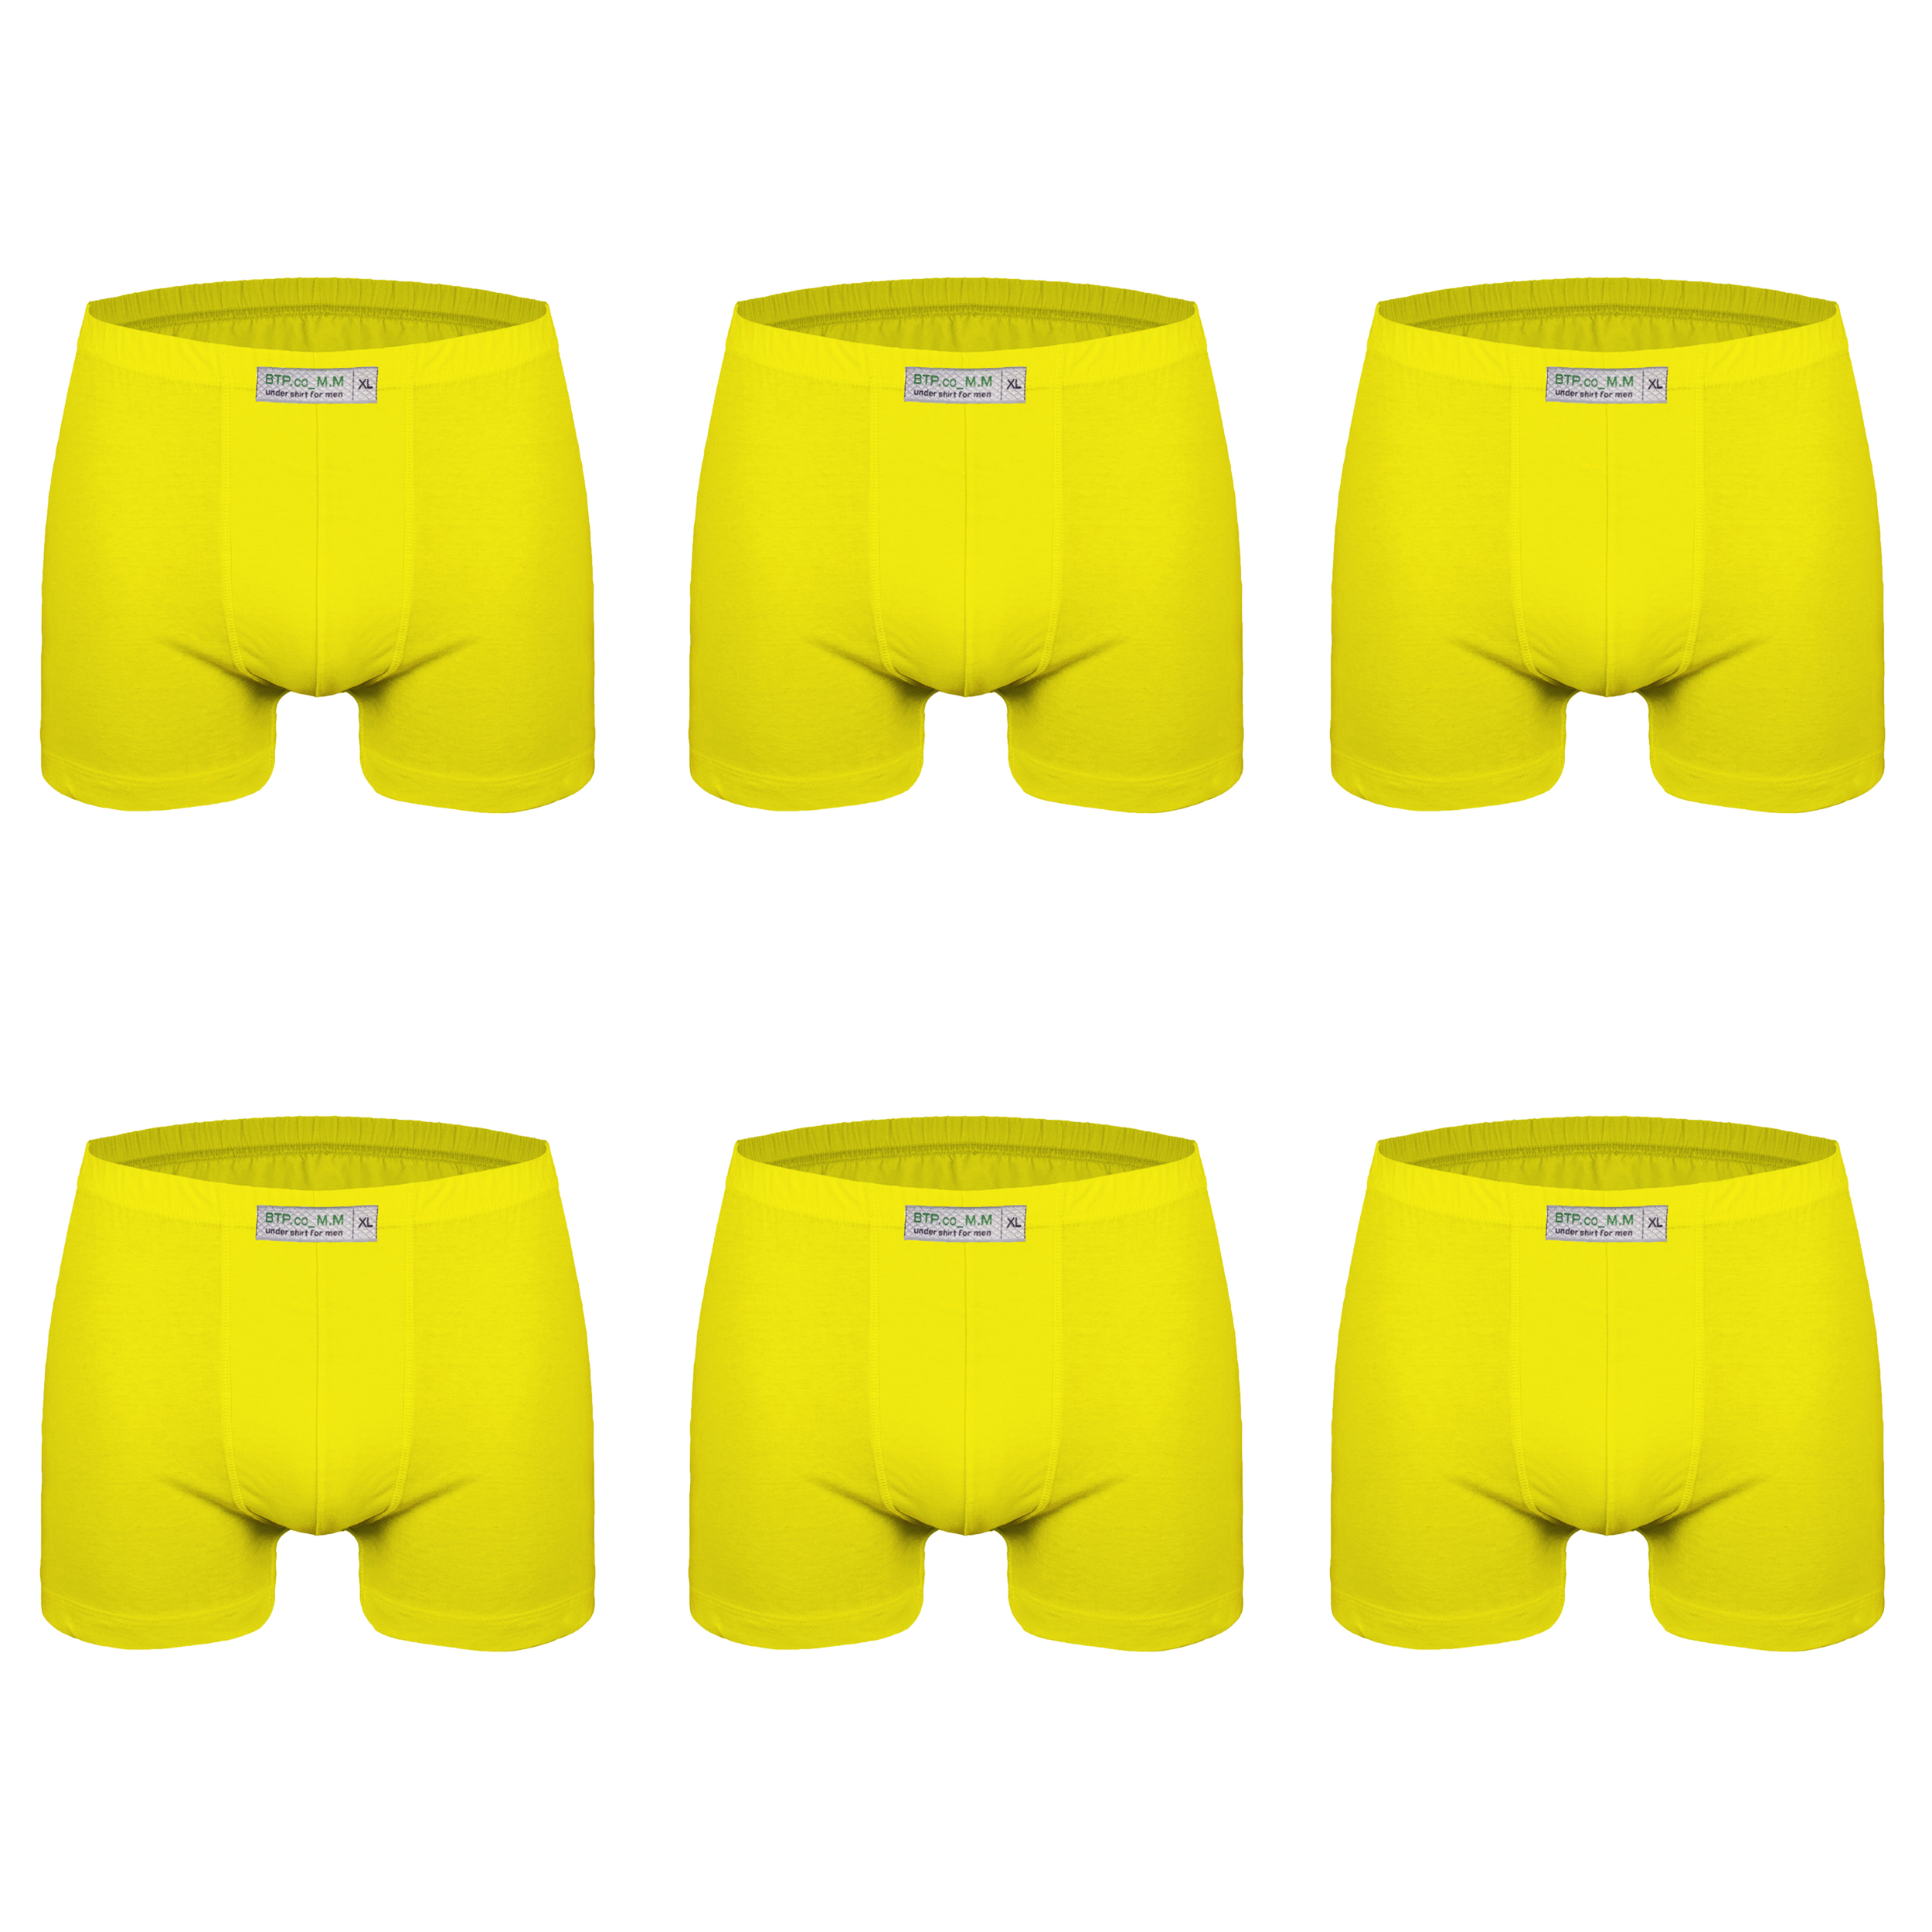 شورت پسرانه برهان تن پوش مدل پادار کد 5-04 رنگ زرد بسته 6 عددی